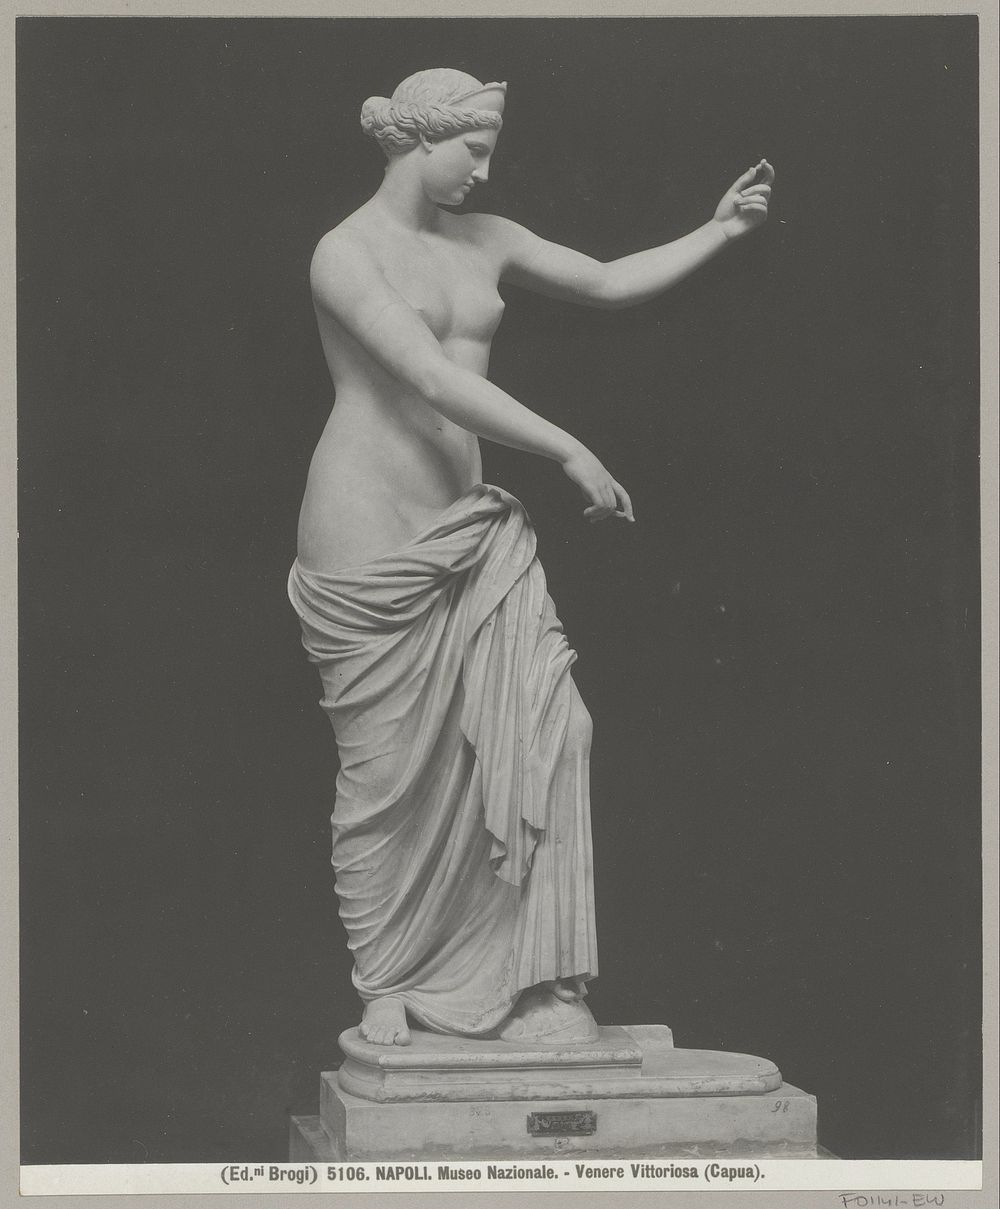 Beeldhouwwerk Venus van Capua (c. 1890 - in or before 1910) by Brogi